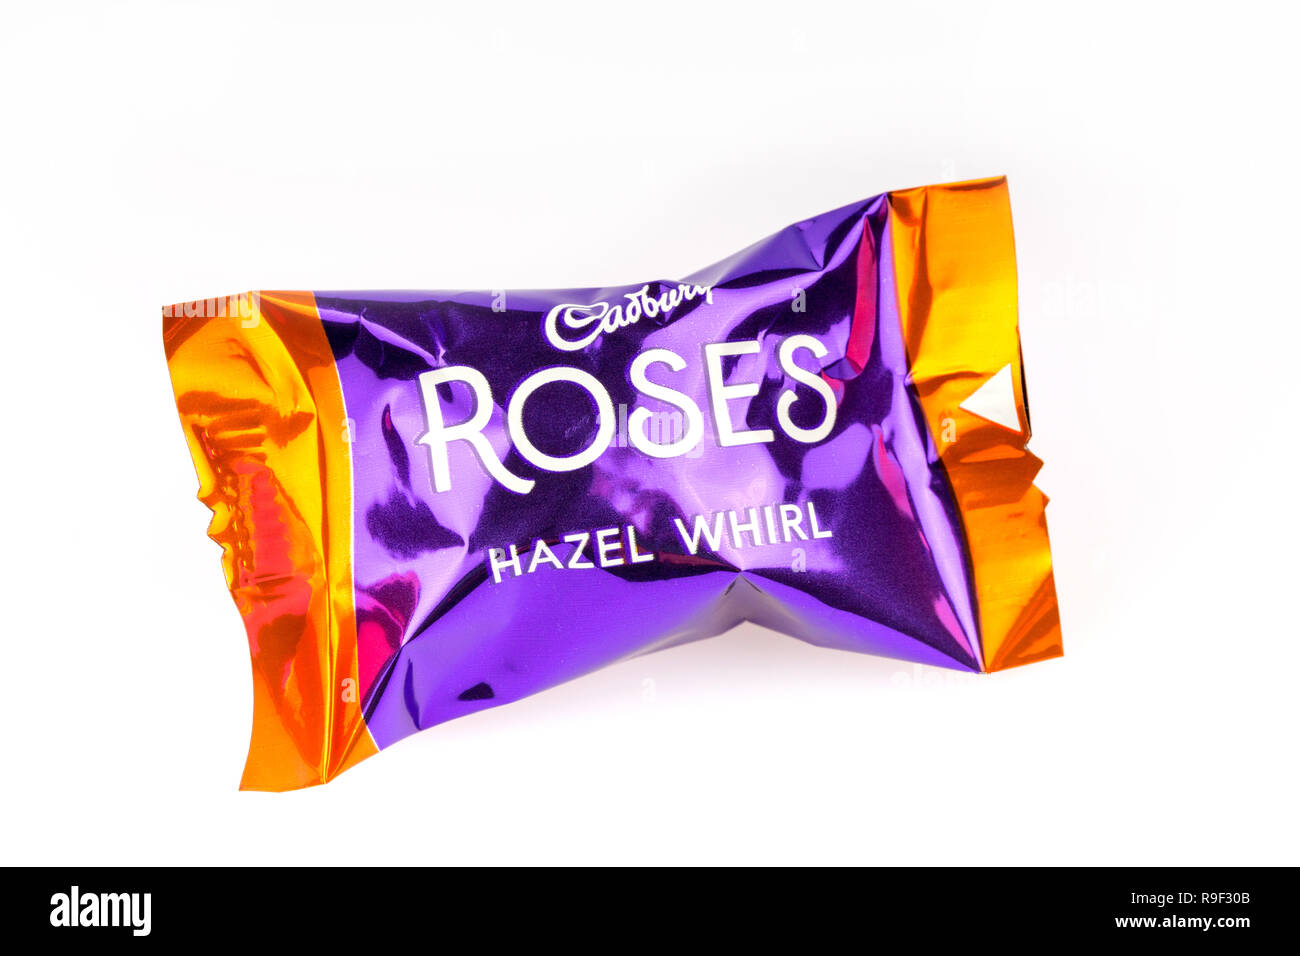 Hazel tourbillon de chocolat Cadbury's roses sur fond blanc Banque D'Images